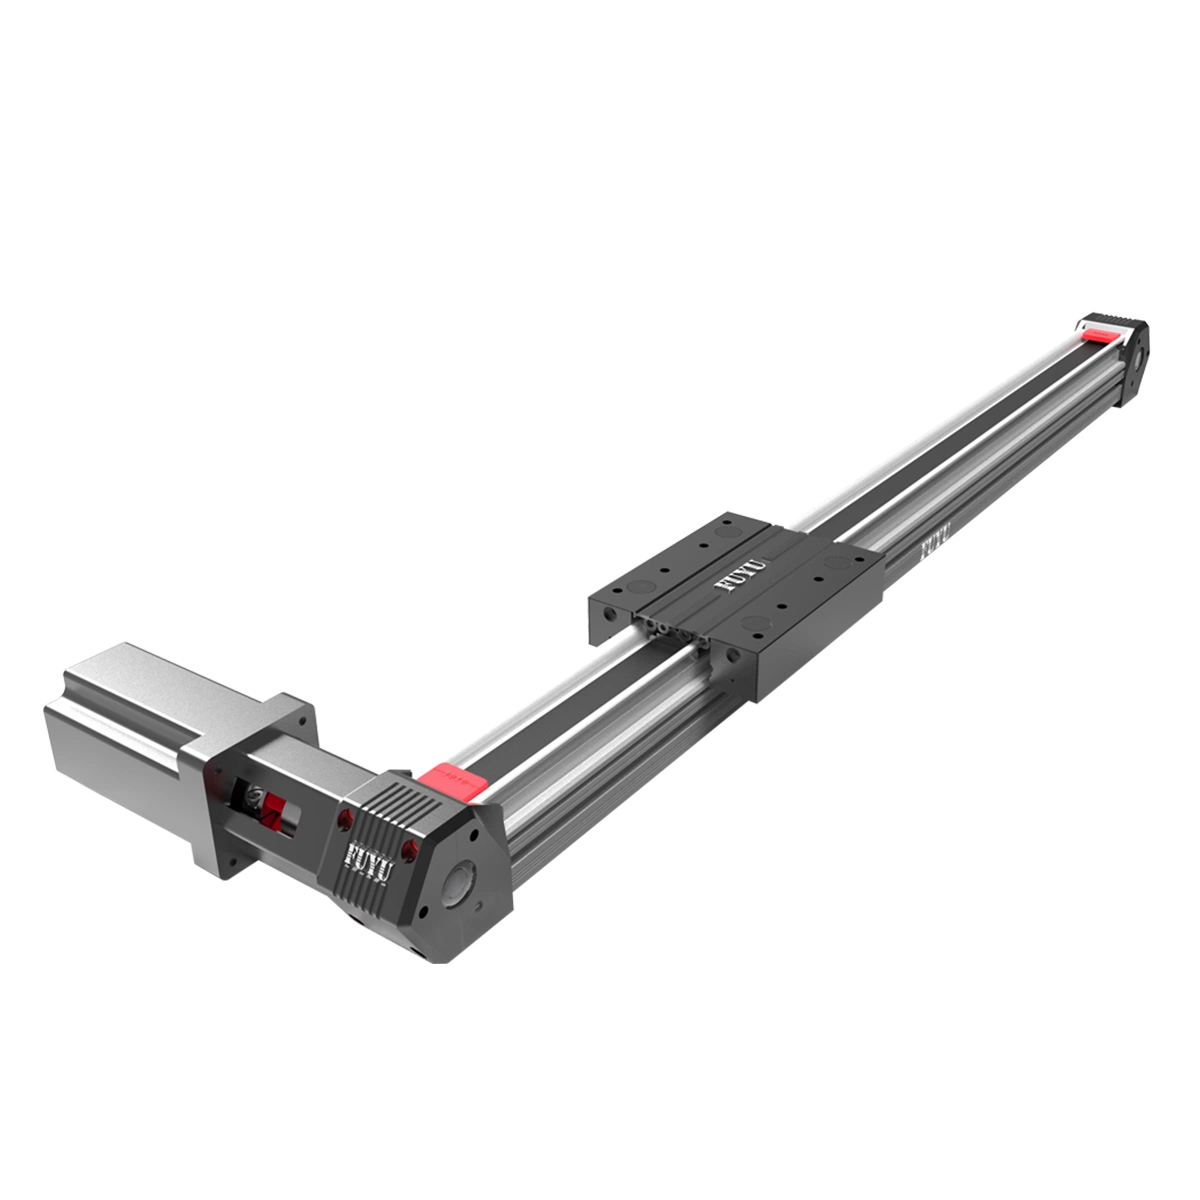 Aluminum Linear Module Belt Driven Actuator High Speed Rail Long Stroke Guide High Speed Linear Robot Linear Slide Linear Motion Linear Robot